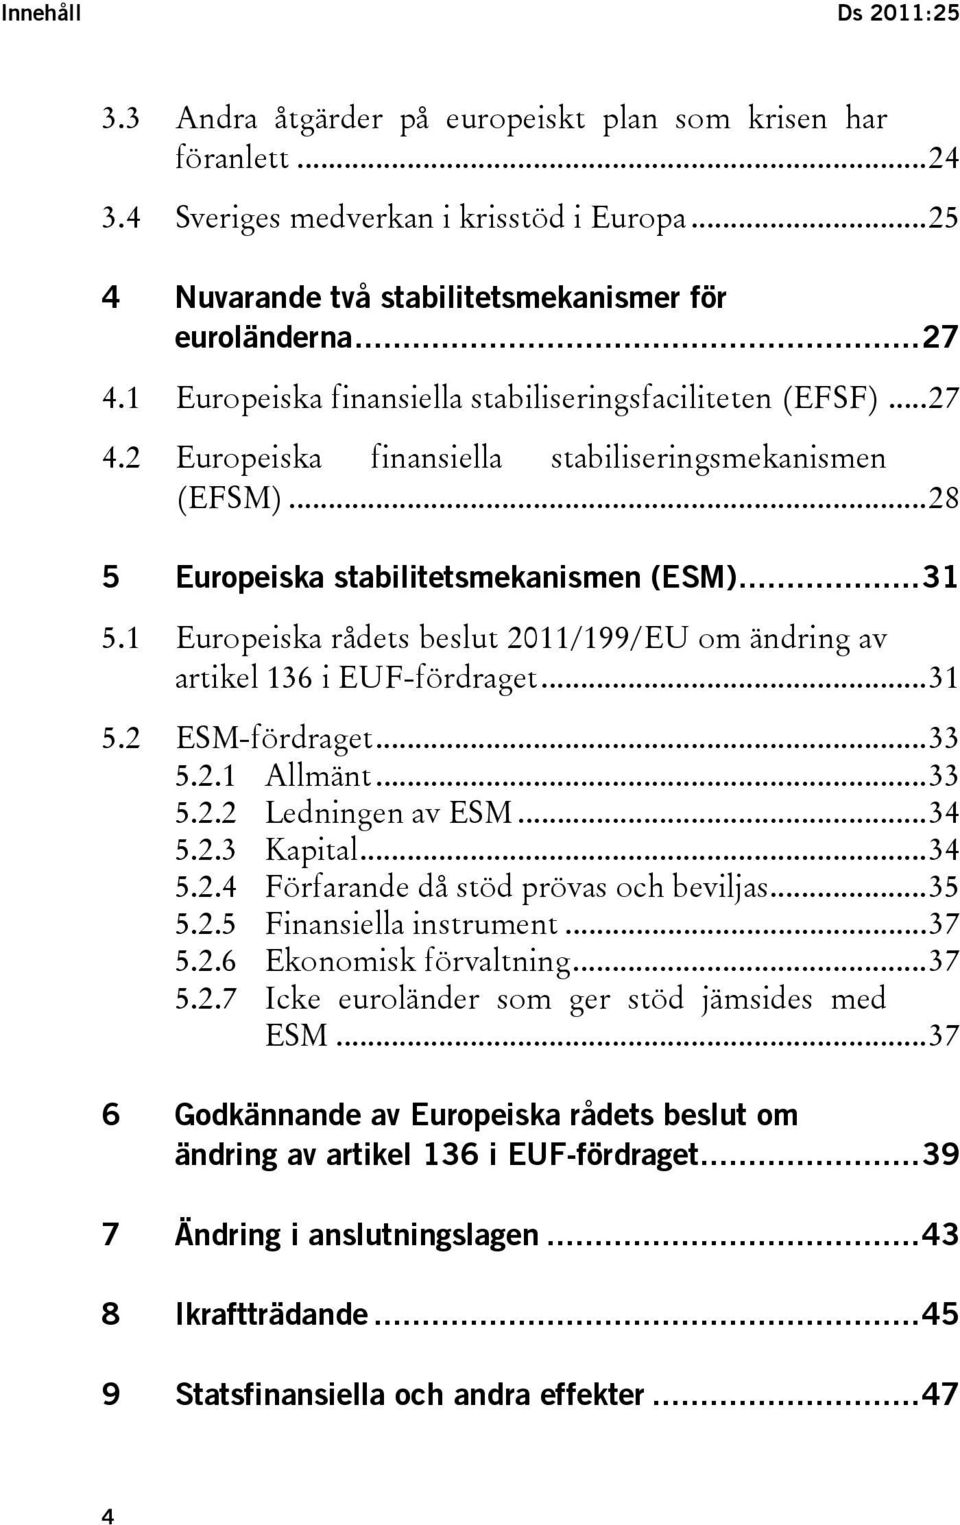 1 Europeiska rådets beslut 2011/199/EU om ändring av artikel 136 i EUF-fördraget...31 5.2 ESM-fördraget...33 5.2.1 Allmänt...33 5.2.2 Ledningen av ESM...34 5.2.3 Kapital...34 5.2.4 Förfarande då stöd prövas och beviljas.